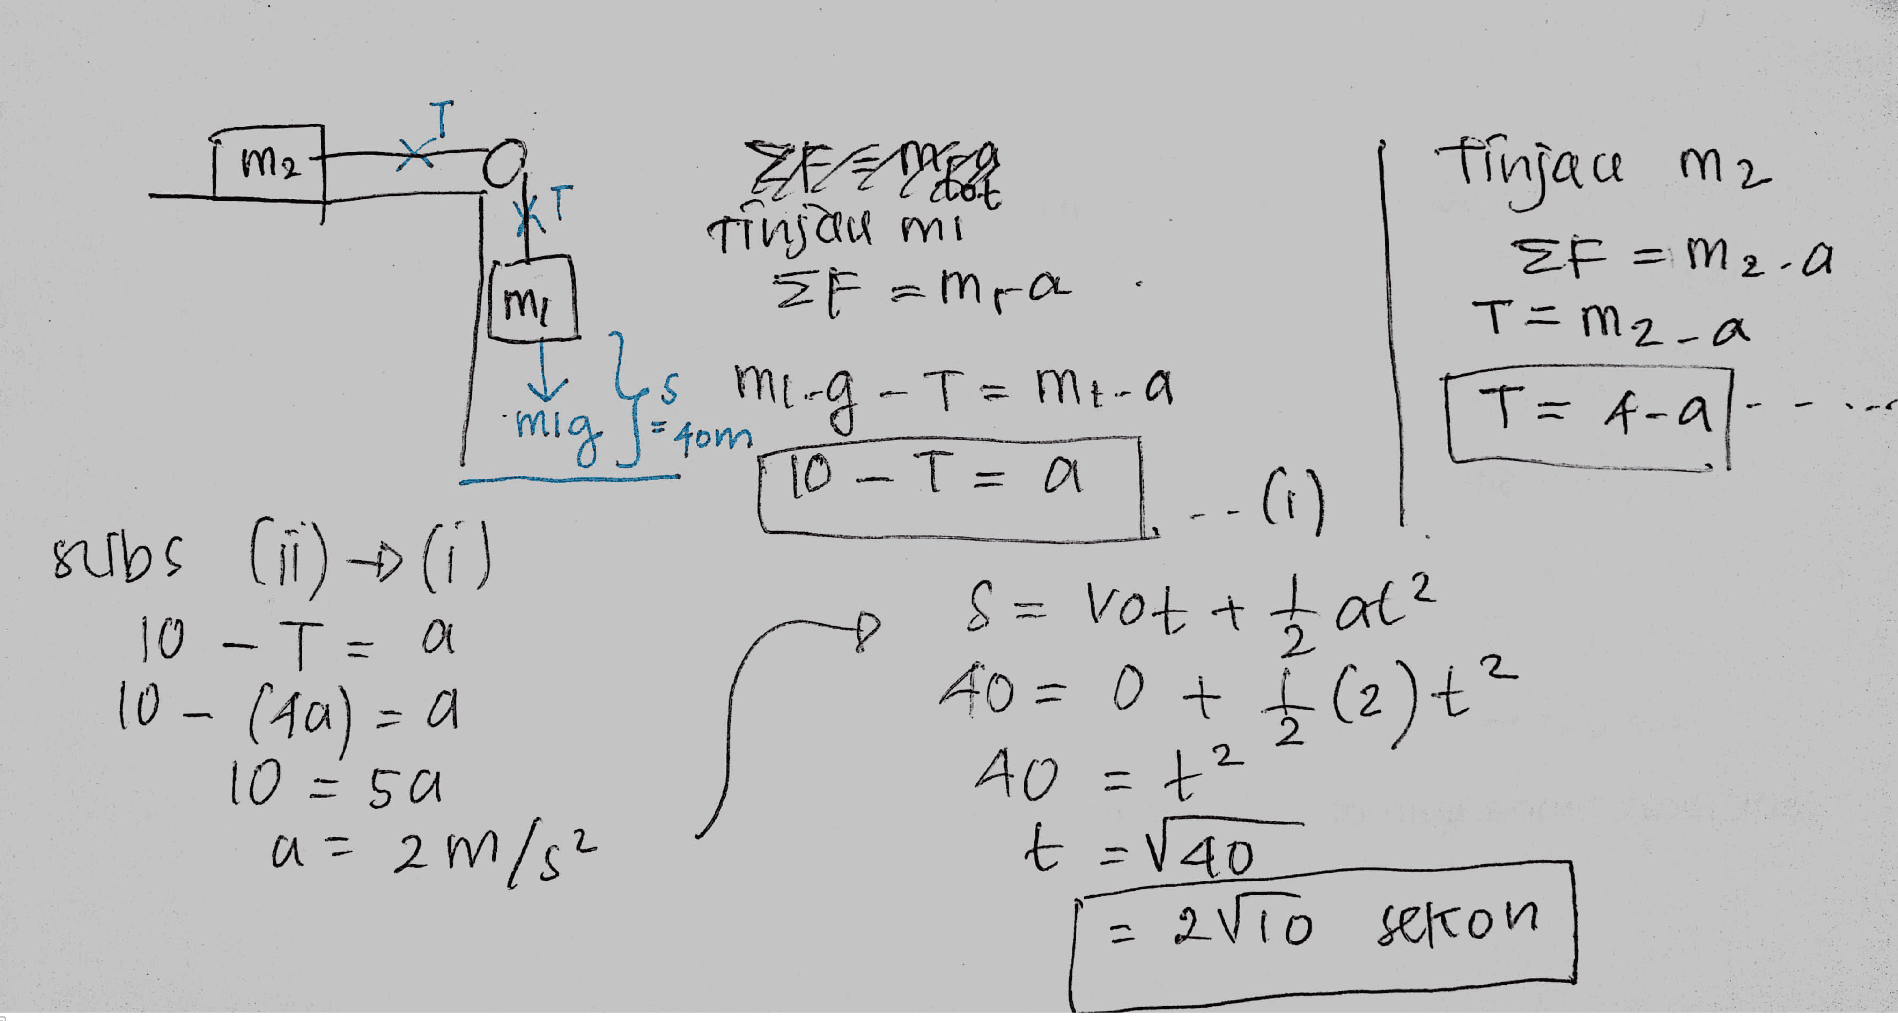 T M2 T T T=Mz-a tinja mz Tinjau mi Ef = M2.a ME ŽE = mga Es murg-T= mi-a mig J= tom T=f-all To - T=0 subs (ii) -(0) 10 -T=a S = vot + t / h at? 10 - (40) - 40 = 0 + { (2)ť? 10= =5a 40=+2 a=2 m/s² t=140 2VTO selon (i) 이 =a 2 